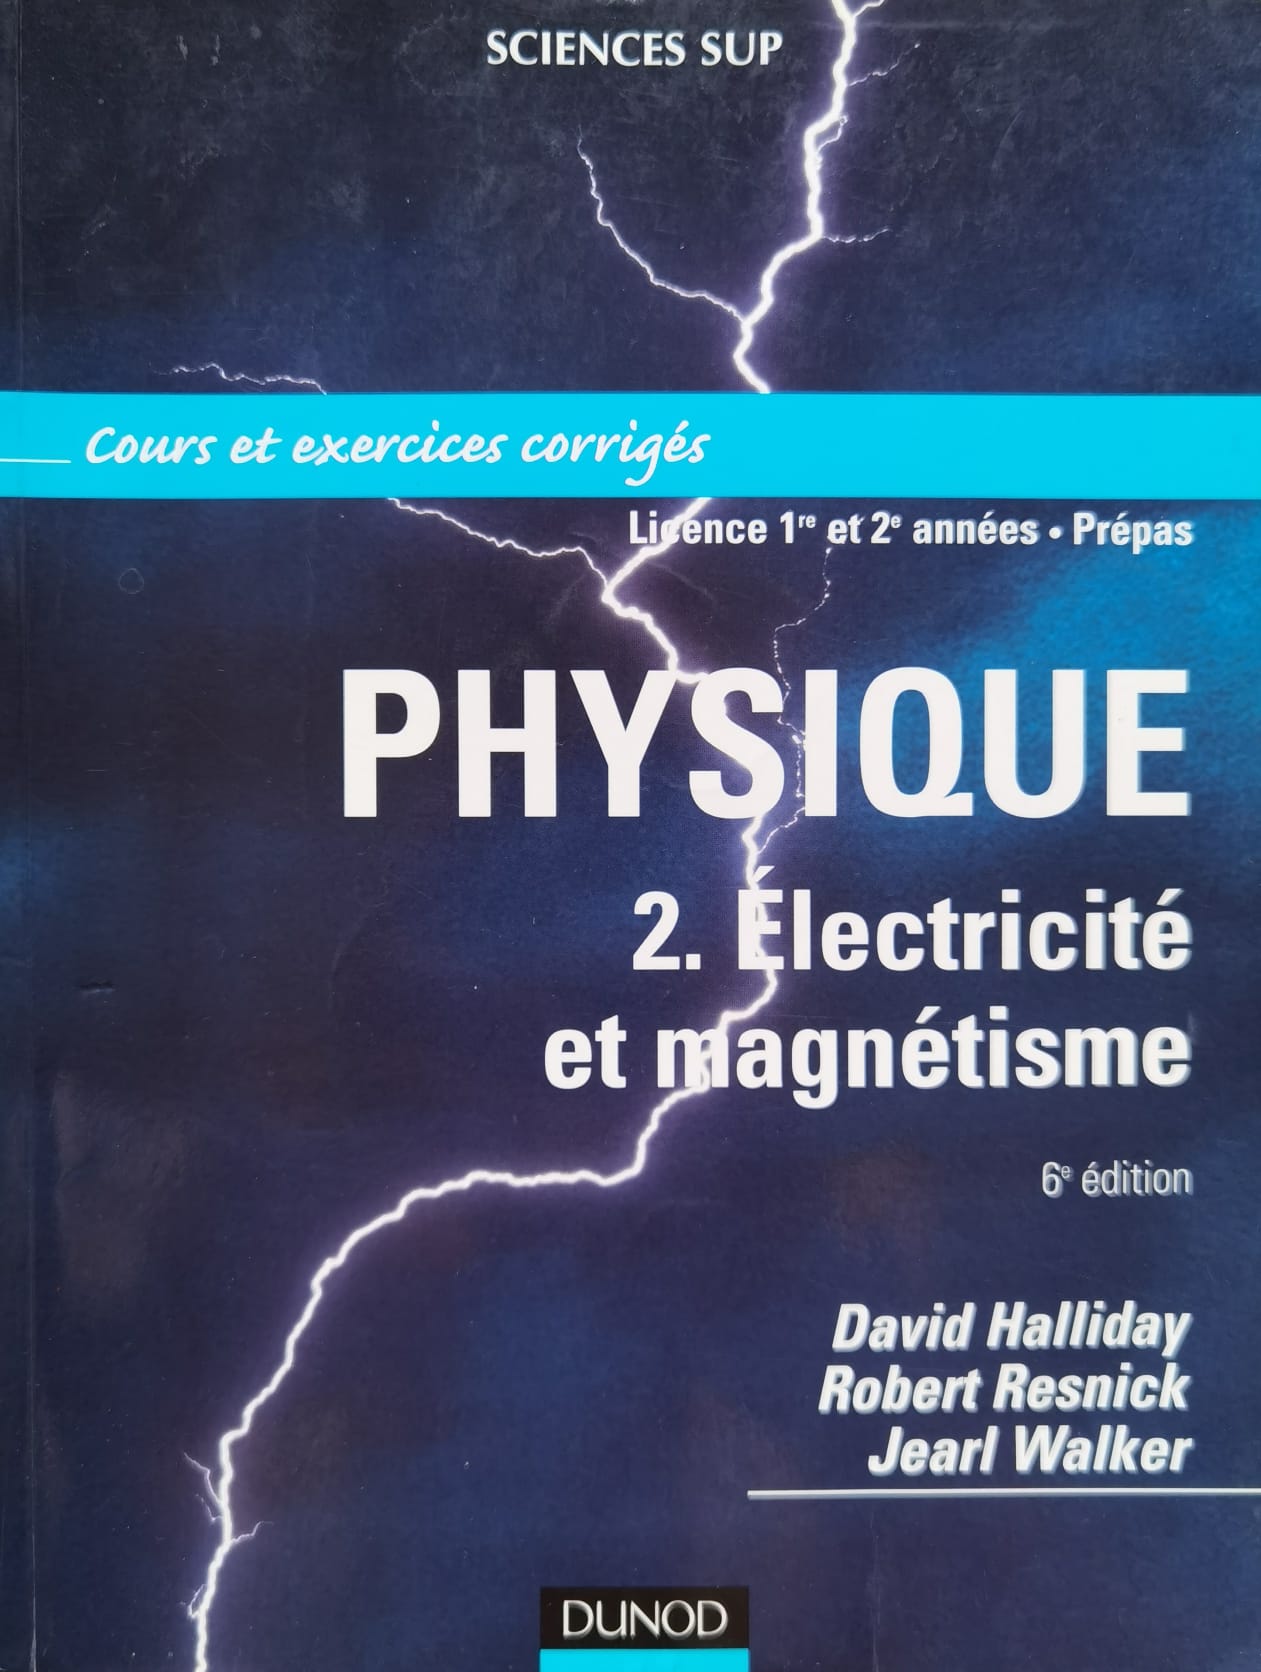 physique 2. electricite et magnetisme 6e edition                                                     david halliday                                                                                      